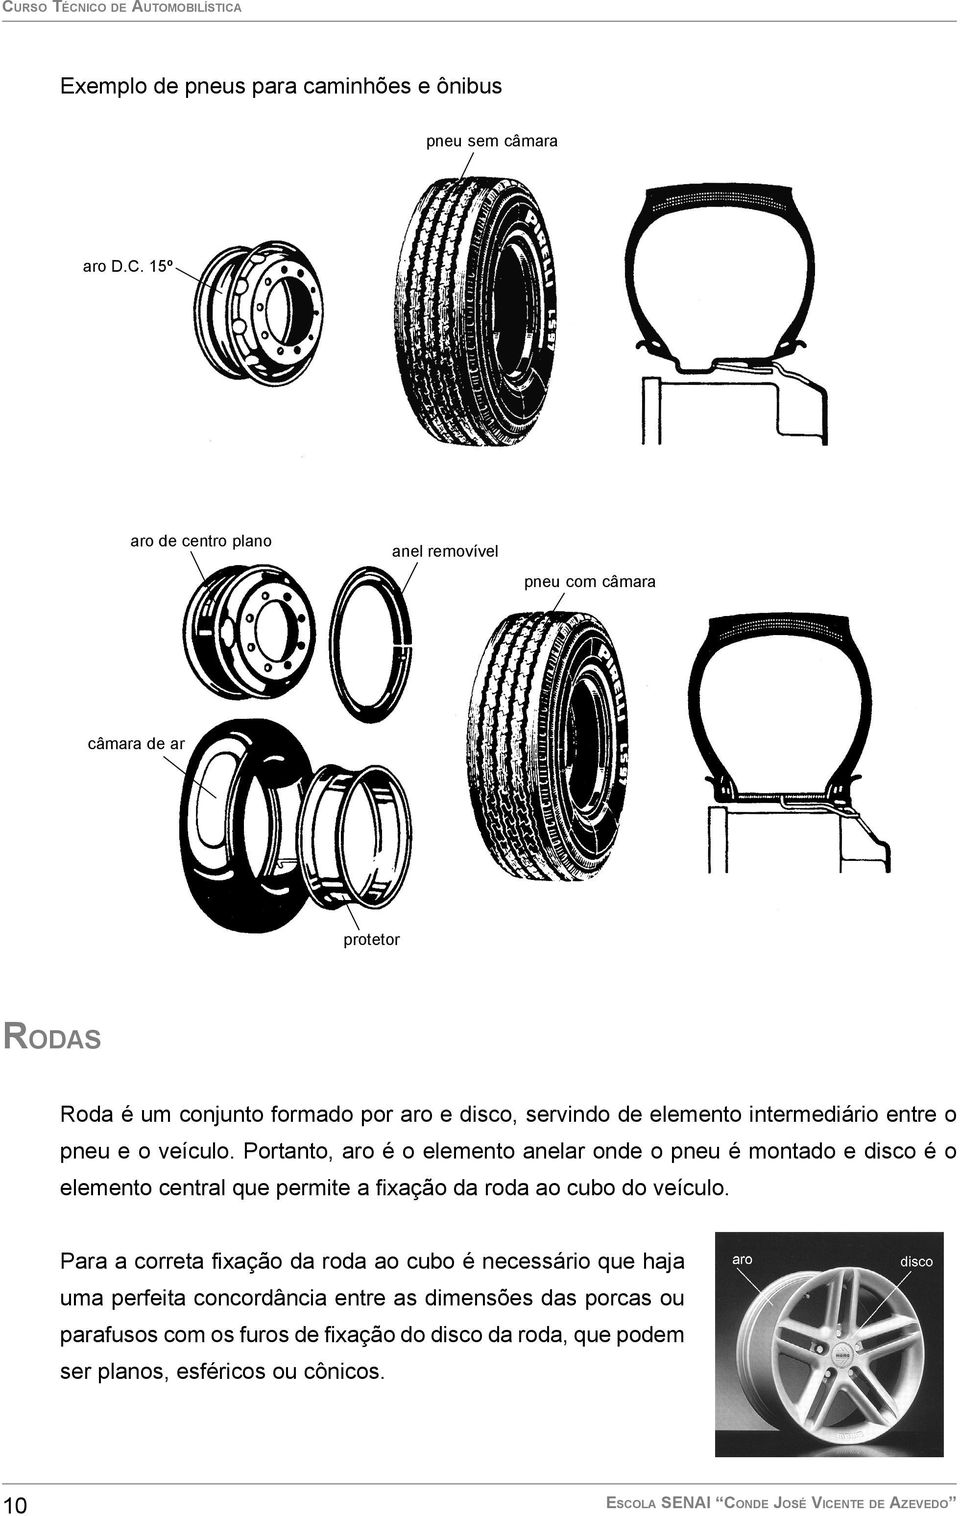 Portanto, aro é o elemento anelar onde o pneu é montado e disco é o elemento central que permite a fixação da roda ao cubo do veículo.